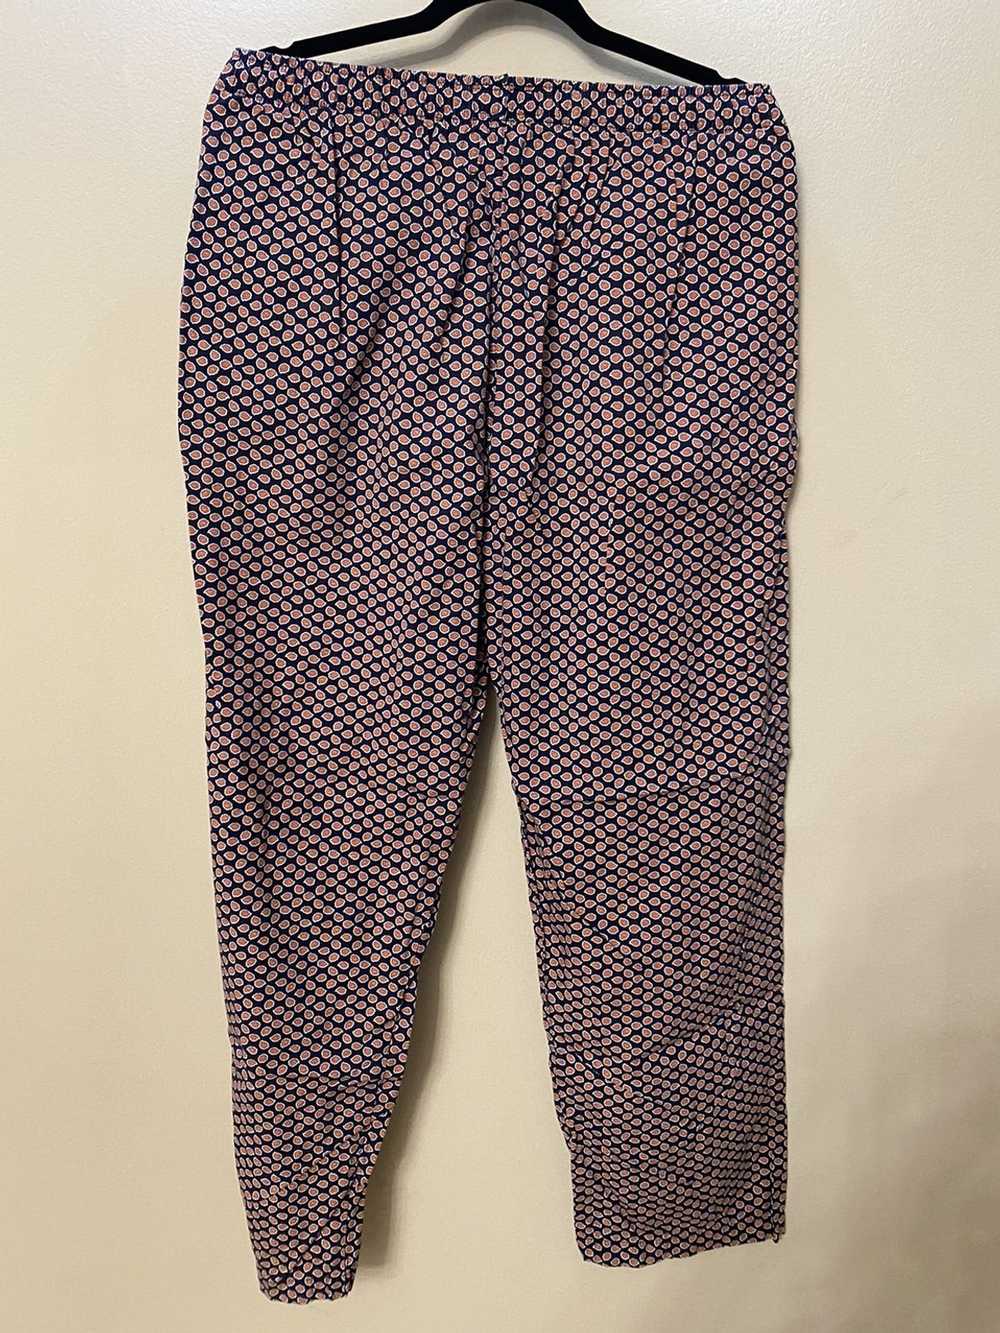 Polo Ralph Lauren Ralph Lauren Paisley Pants - image 4